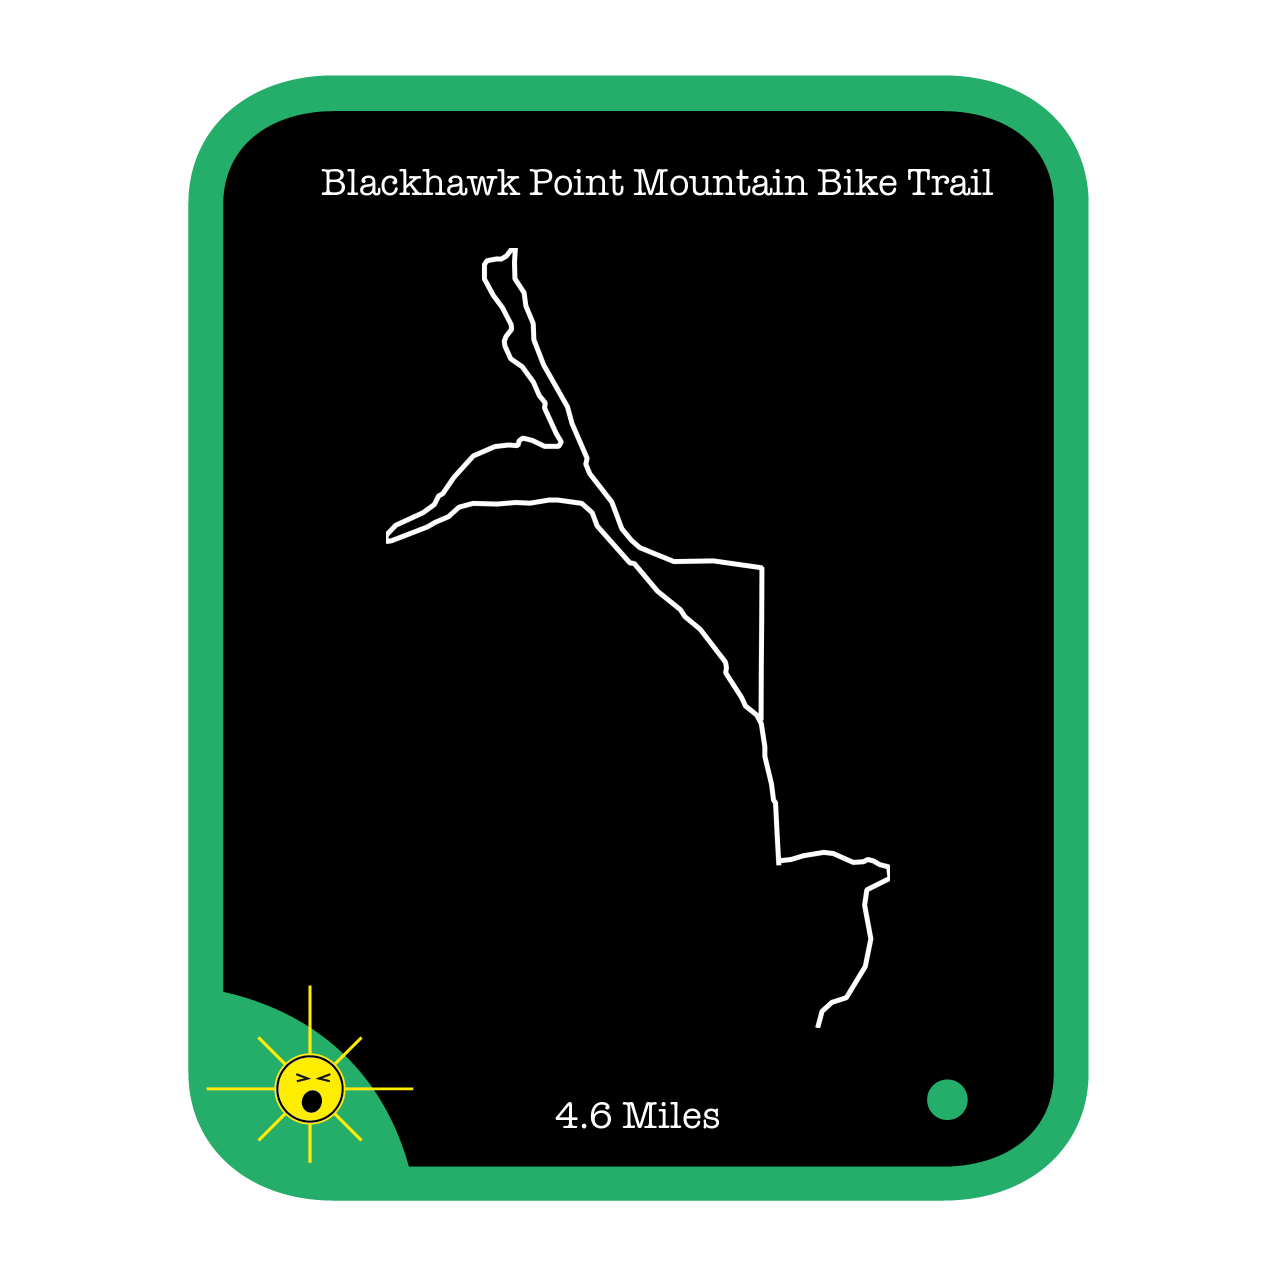 Blackhawk Point Mountain Bike Trail